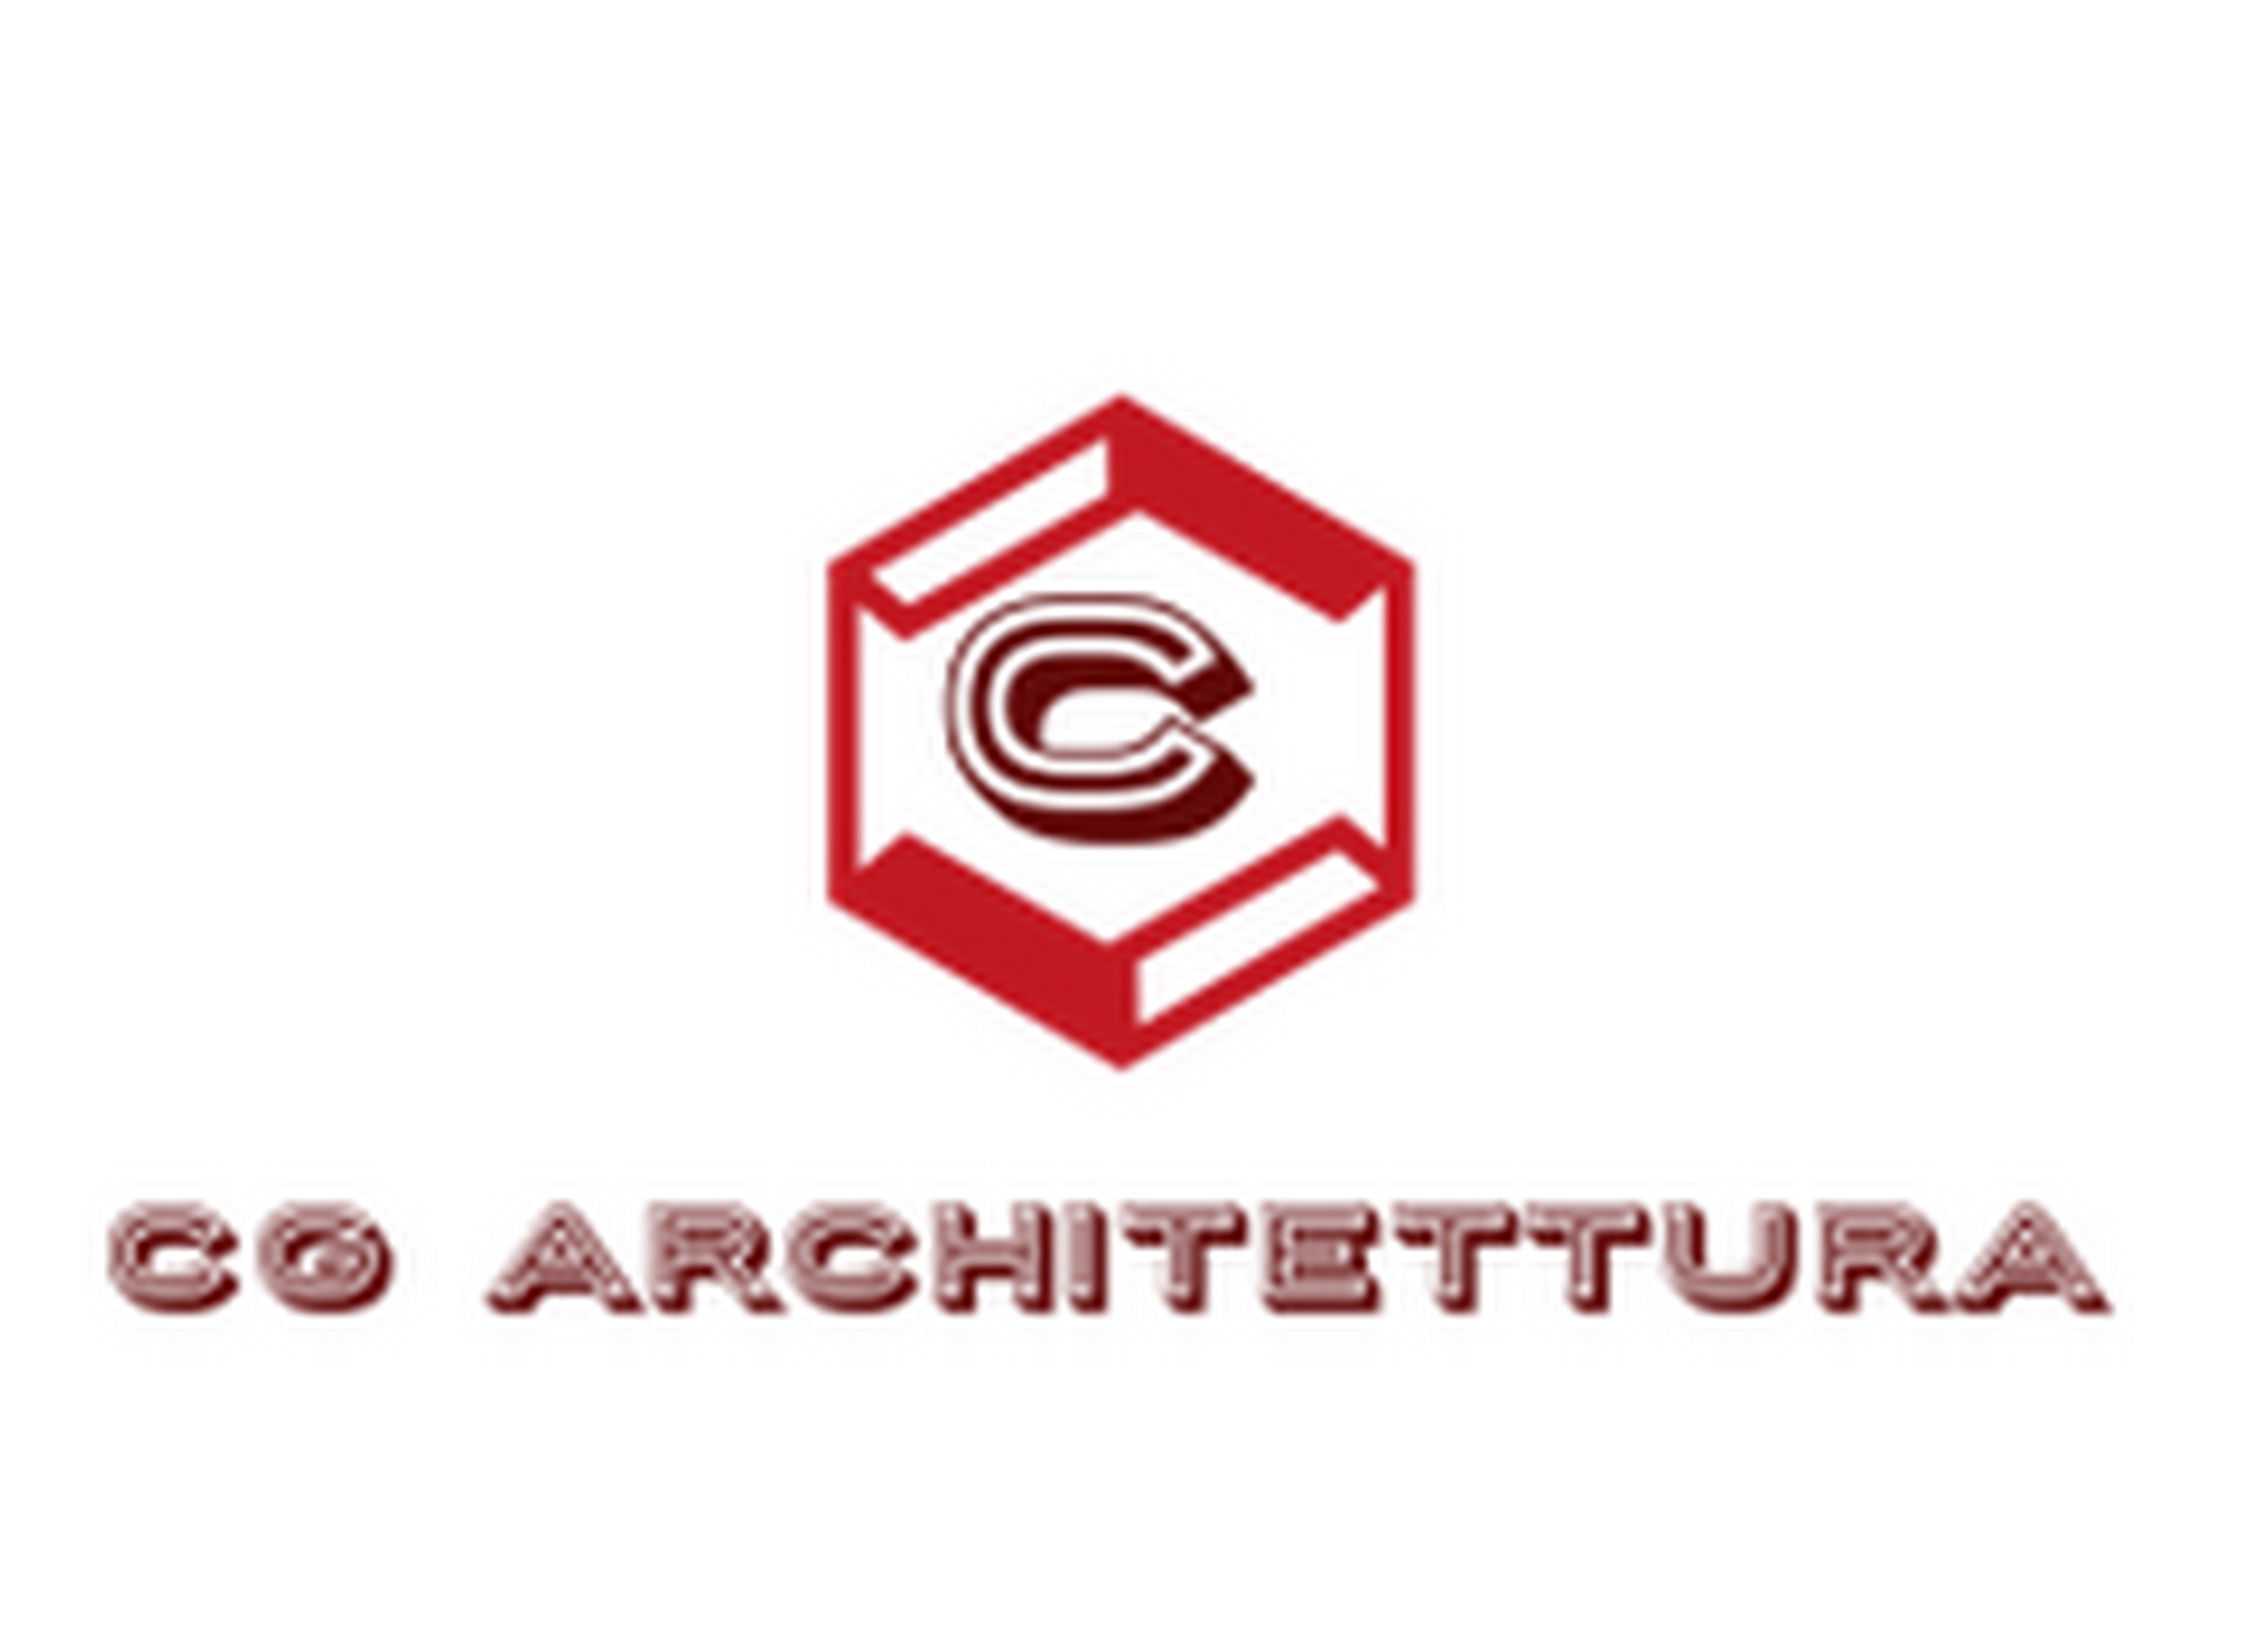 foto logo partner CG architettura